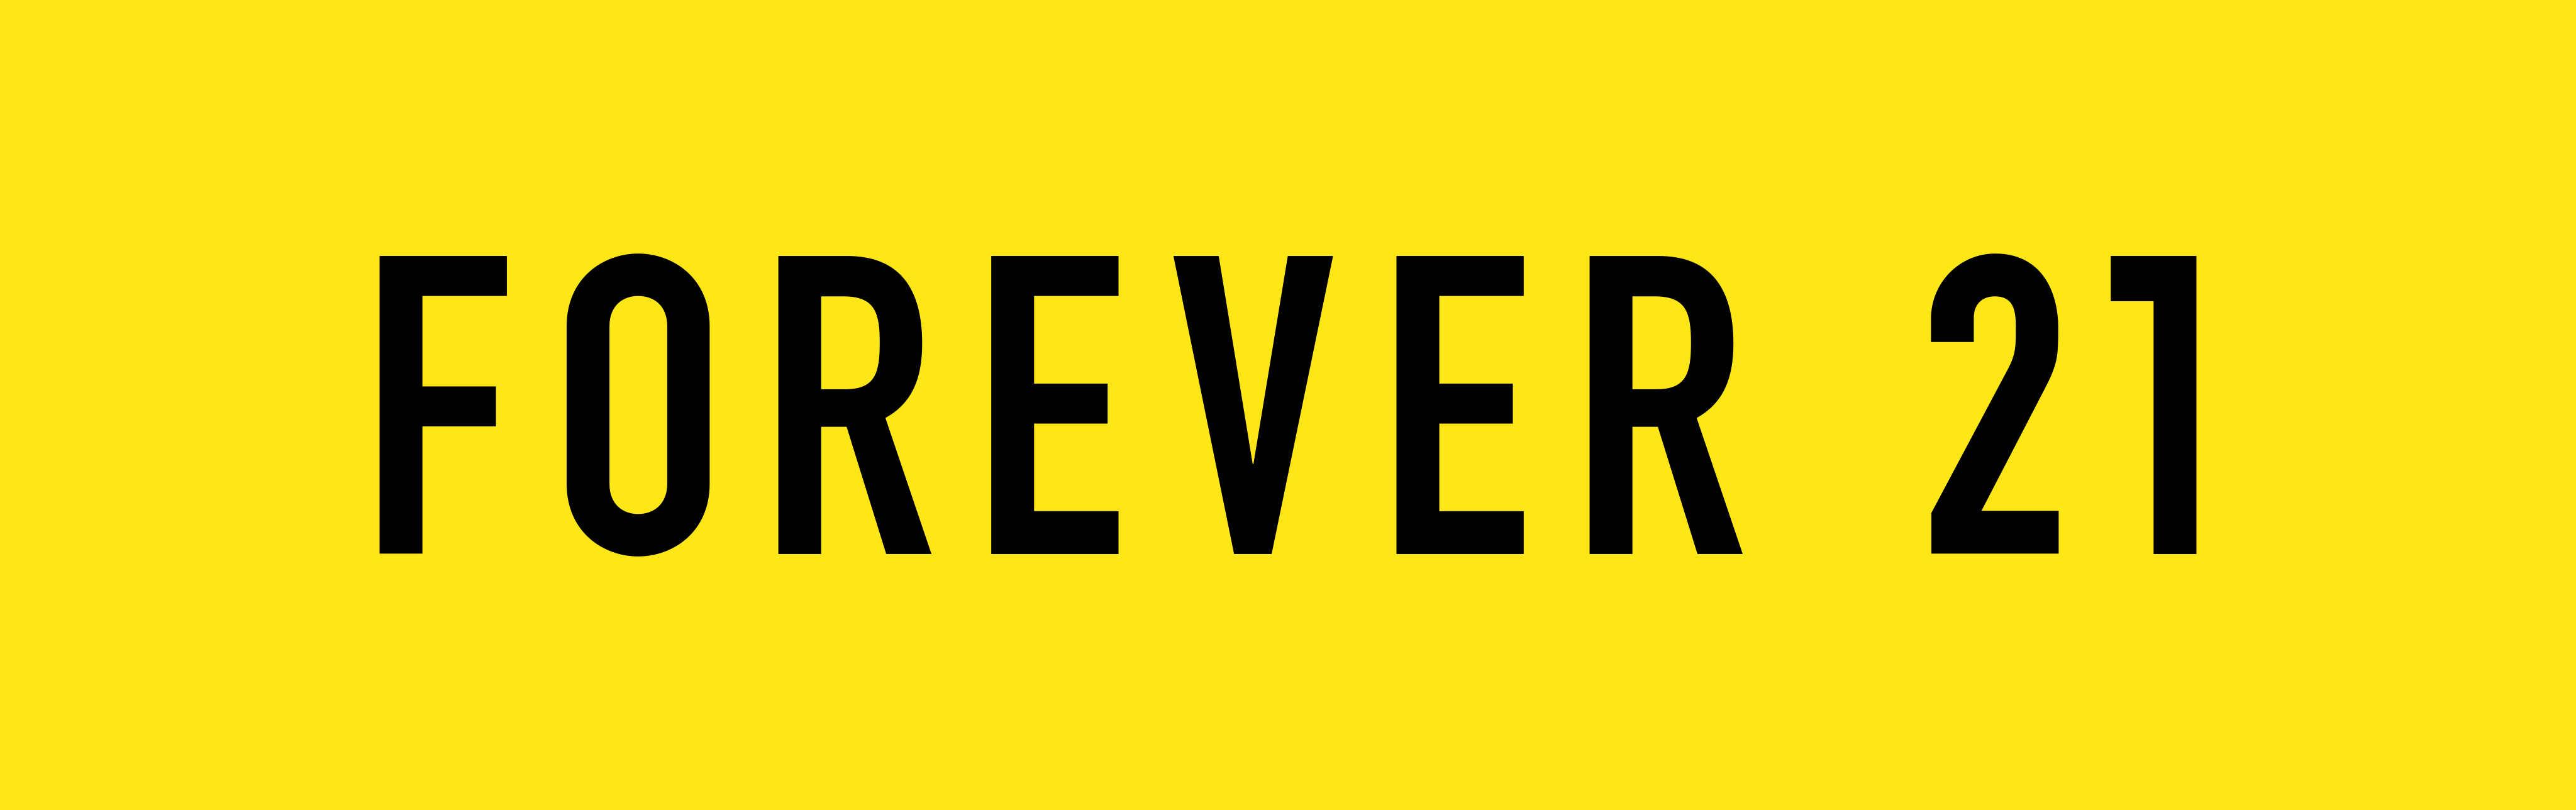 forever-21-logo